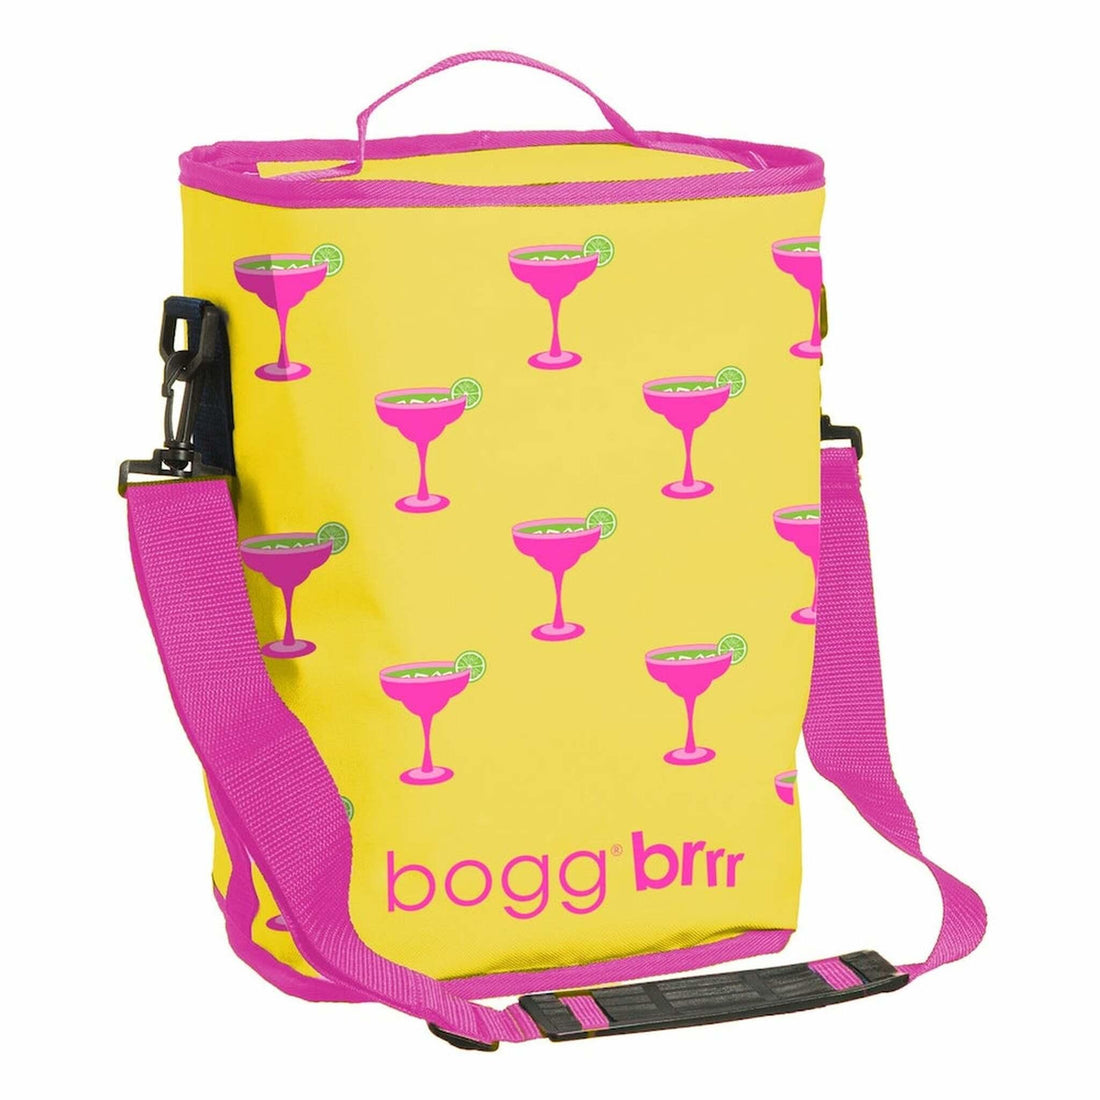 Bogg Brr Cooler Insert - Kitty Hawk Kites Online Store